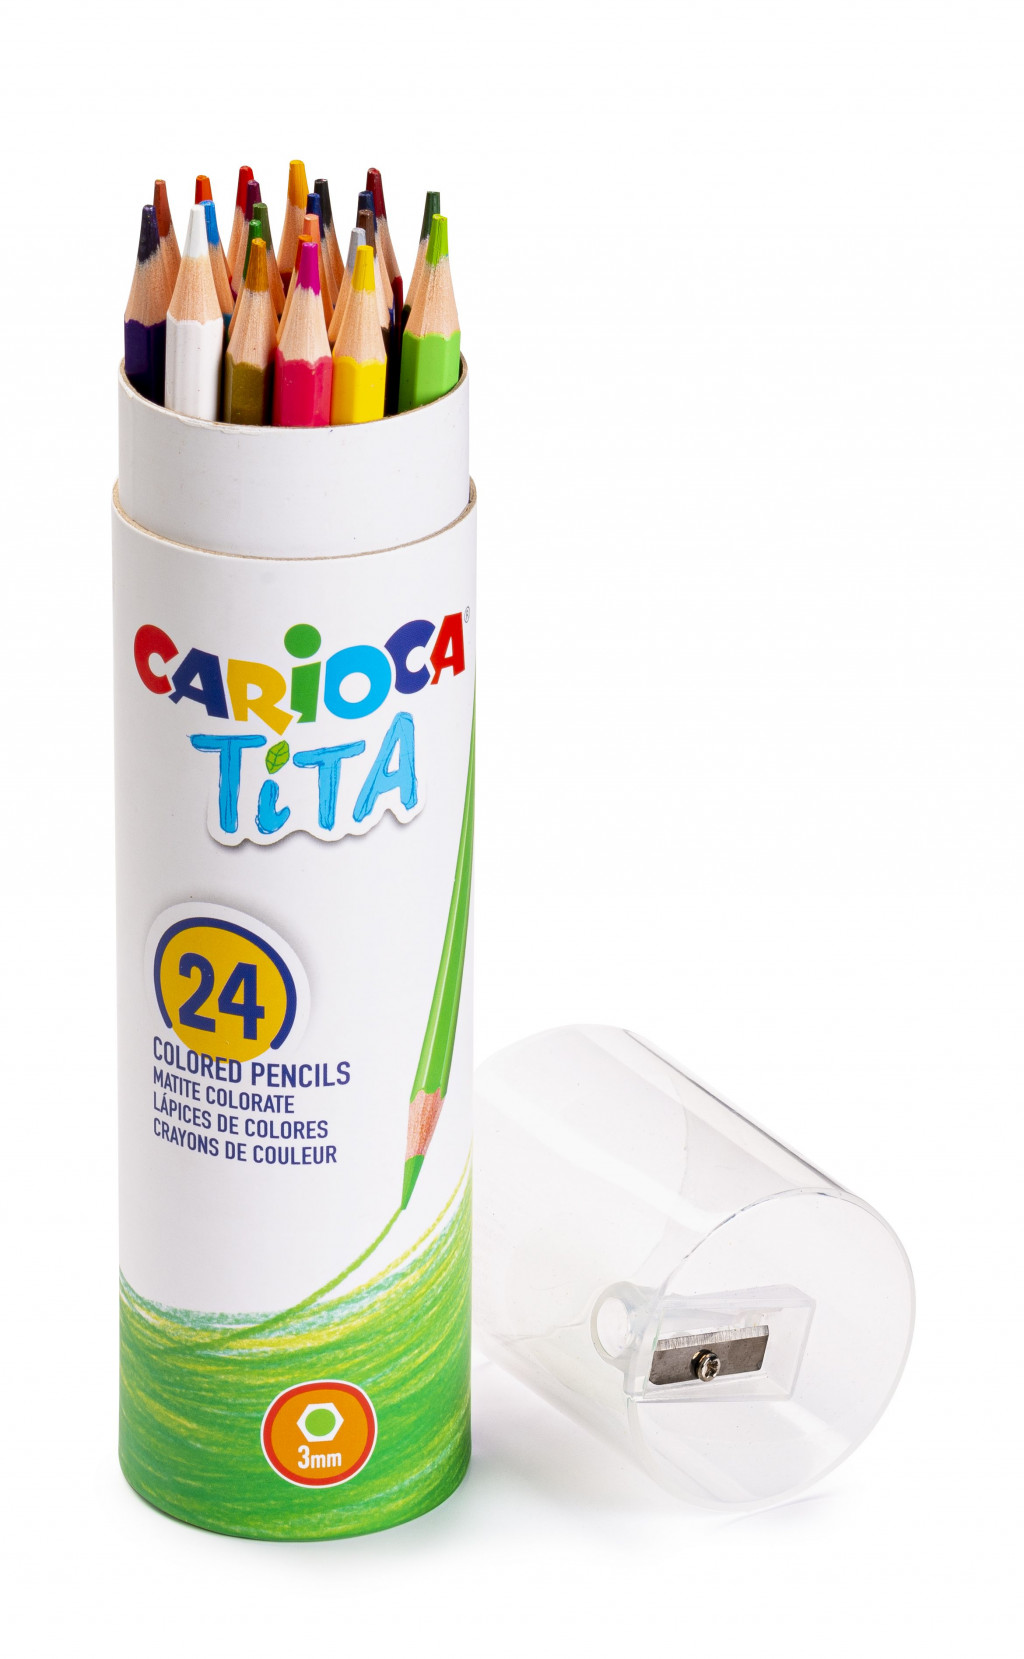 Värvipliiatsid CARIOCA TITA, koos teritajaga, karbis, 24 värvi